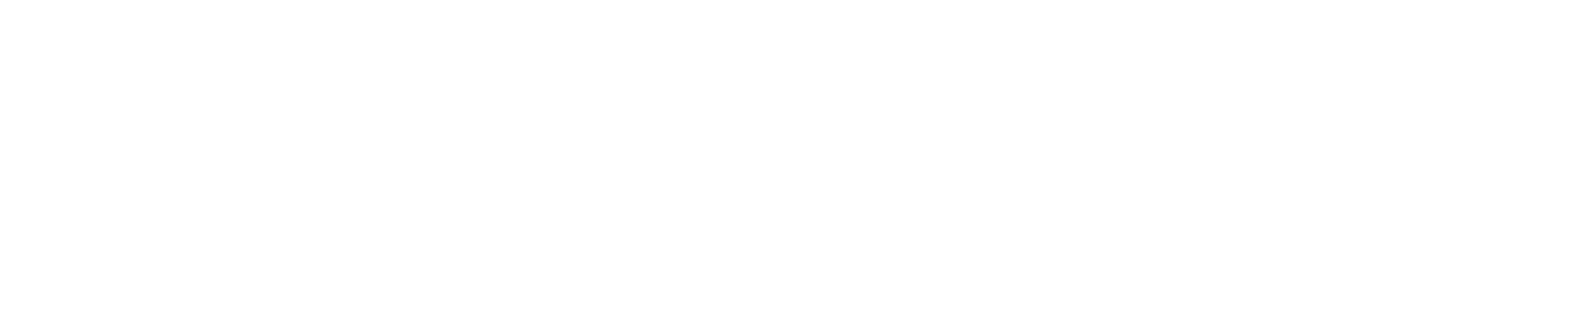 Valkyrie ETF Logo groß für dunkle Hintergründe (transparentes PNG)